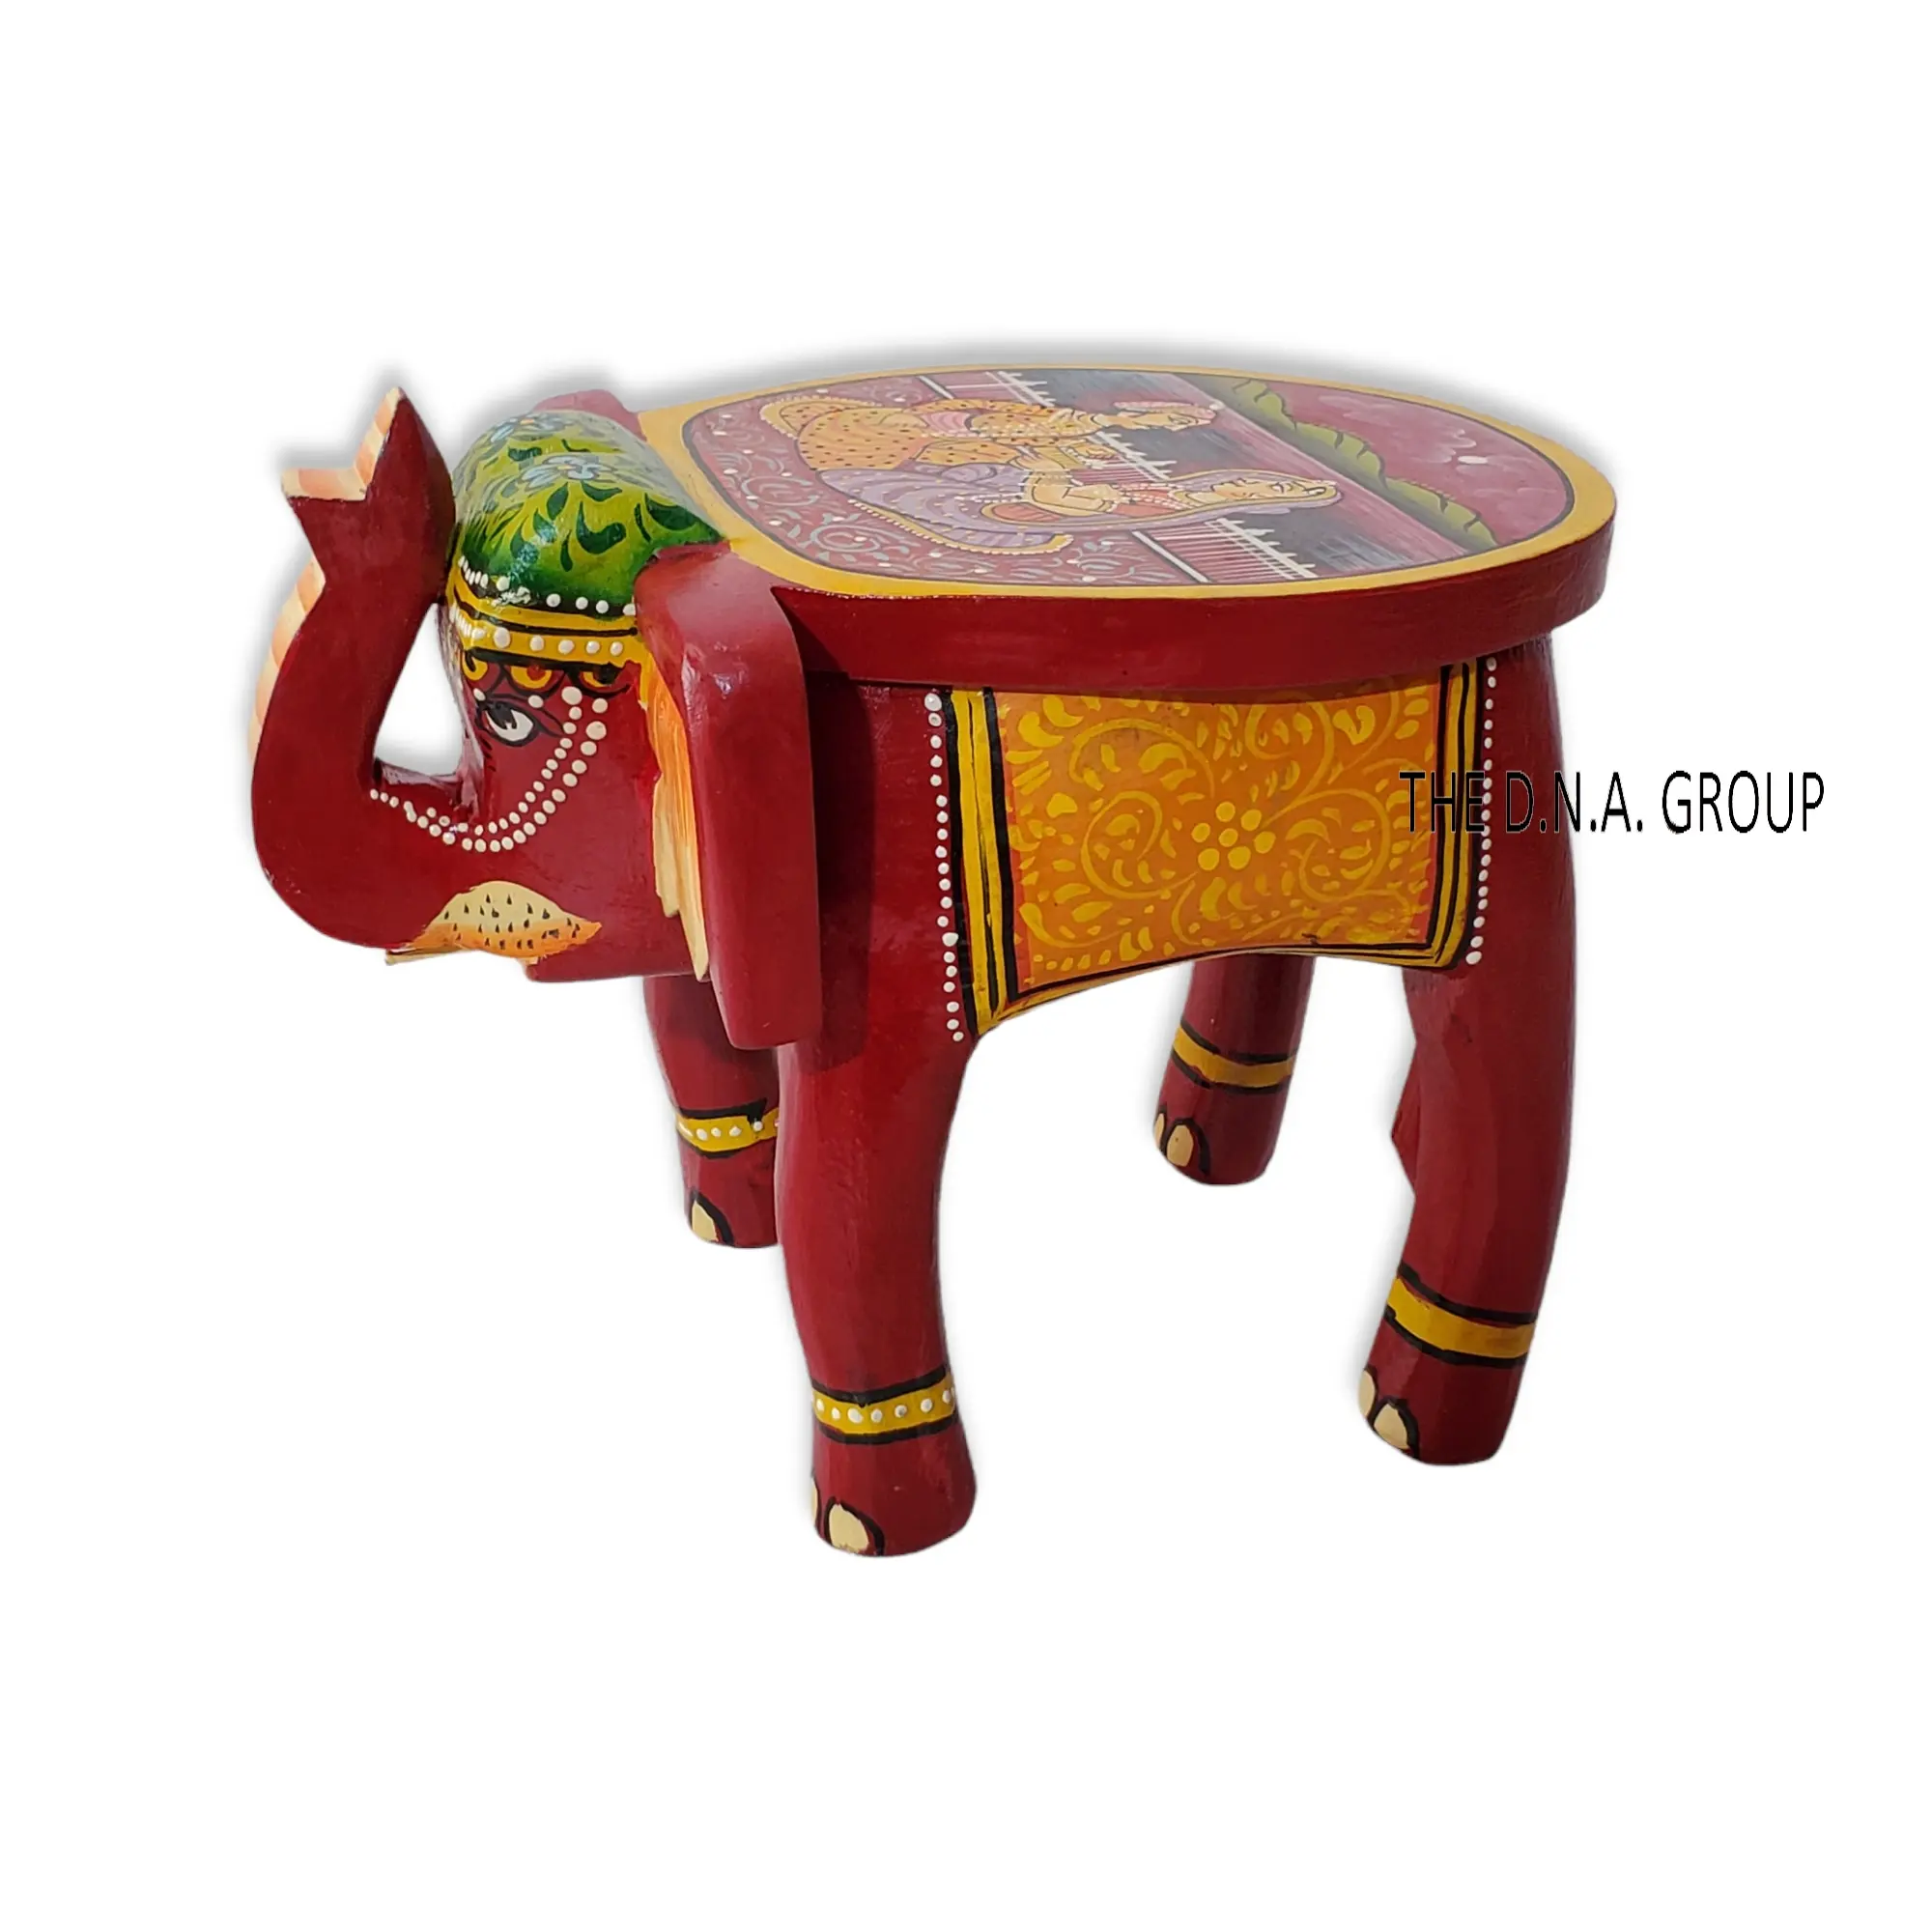 Sgabello etnico in legno di elefante in stile indiano a bassa altezza dipinto a mano con bellissime combinazioni di colori tavolino poggiapiedi